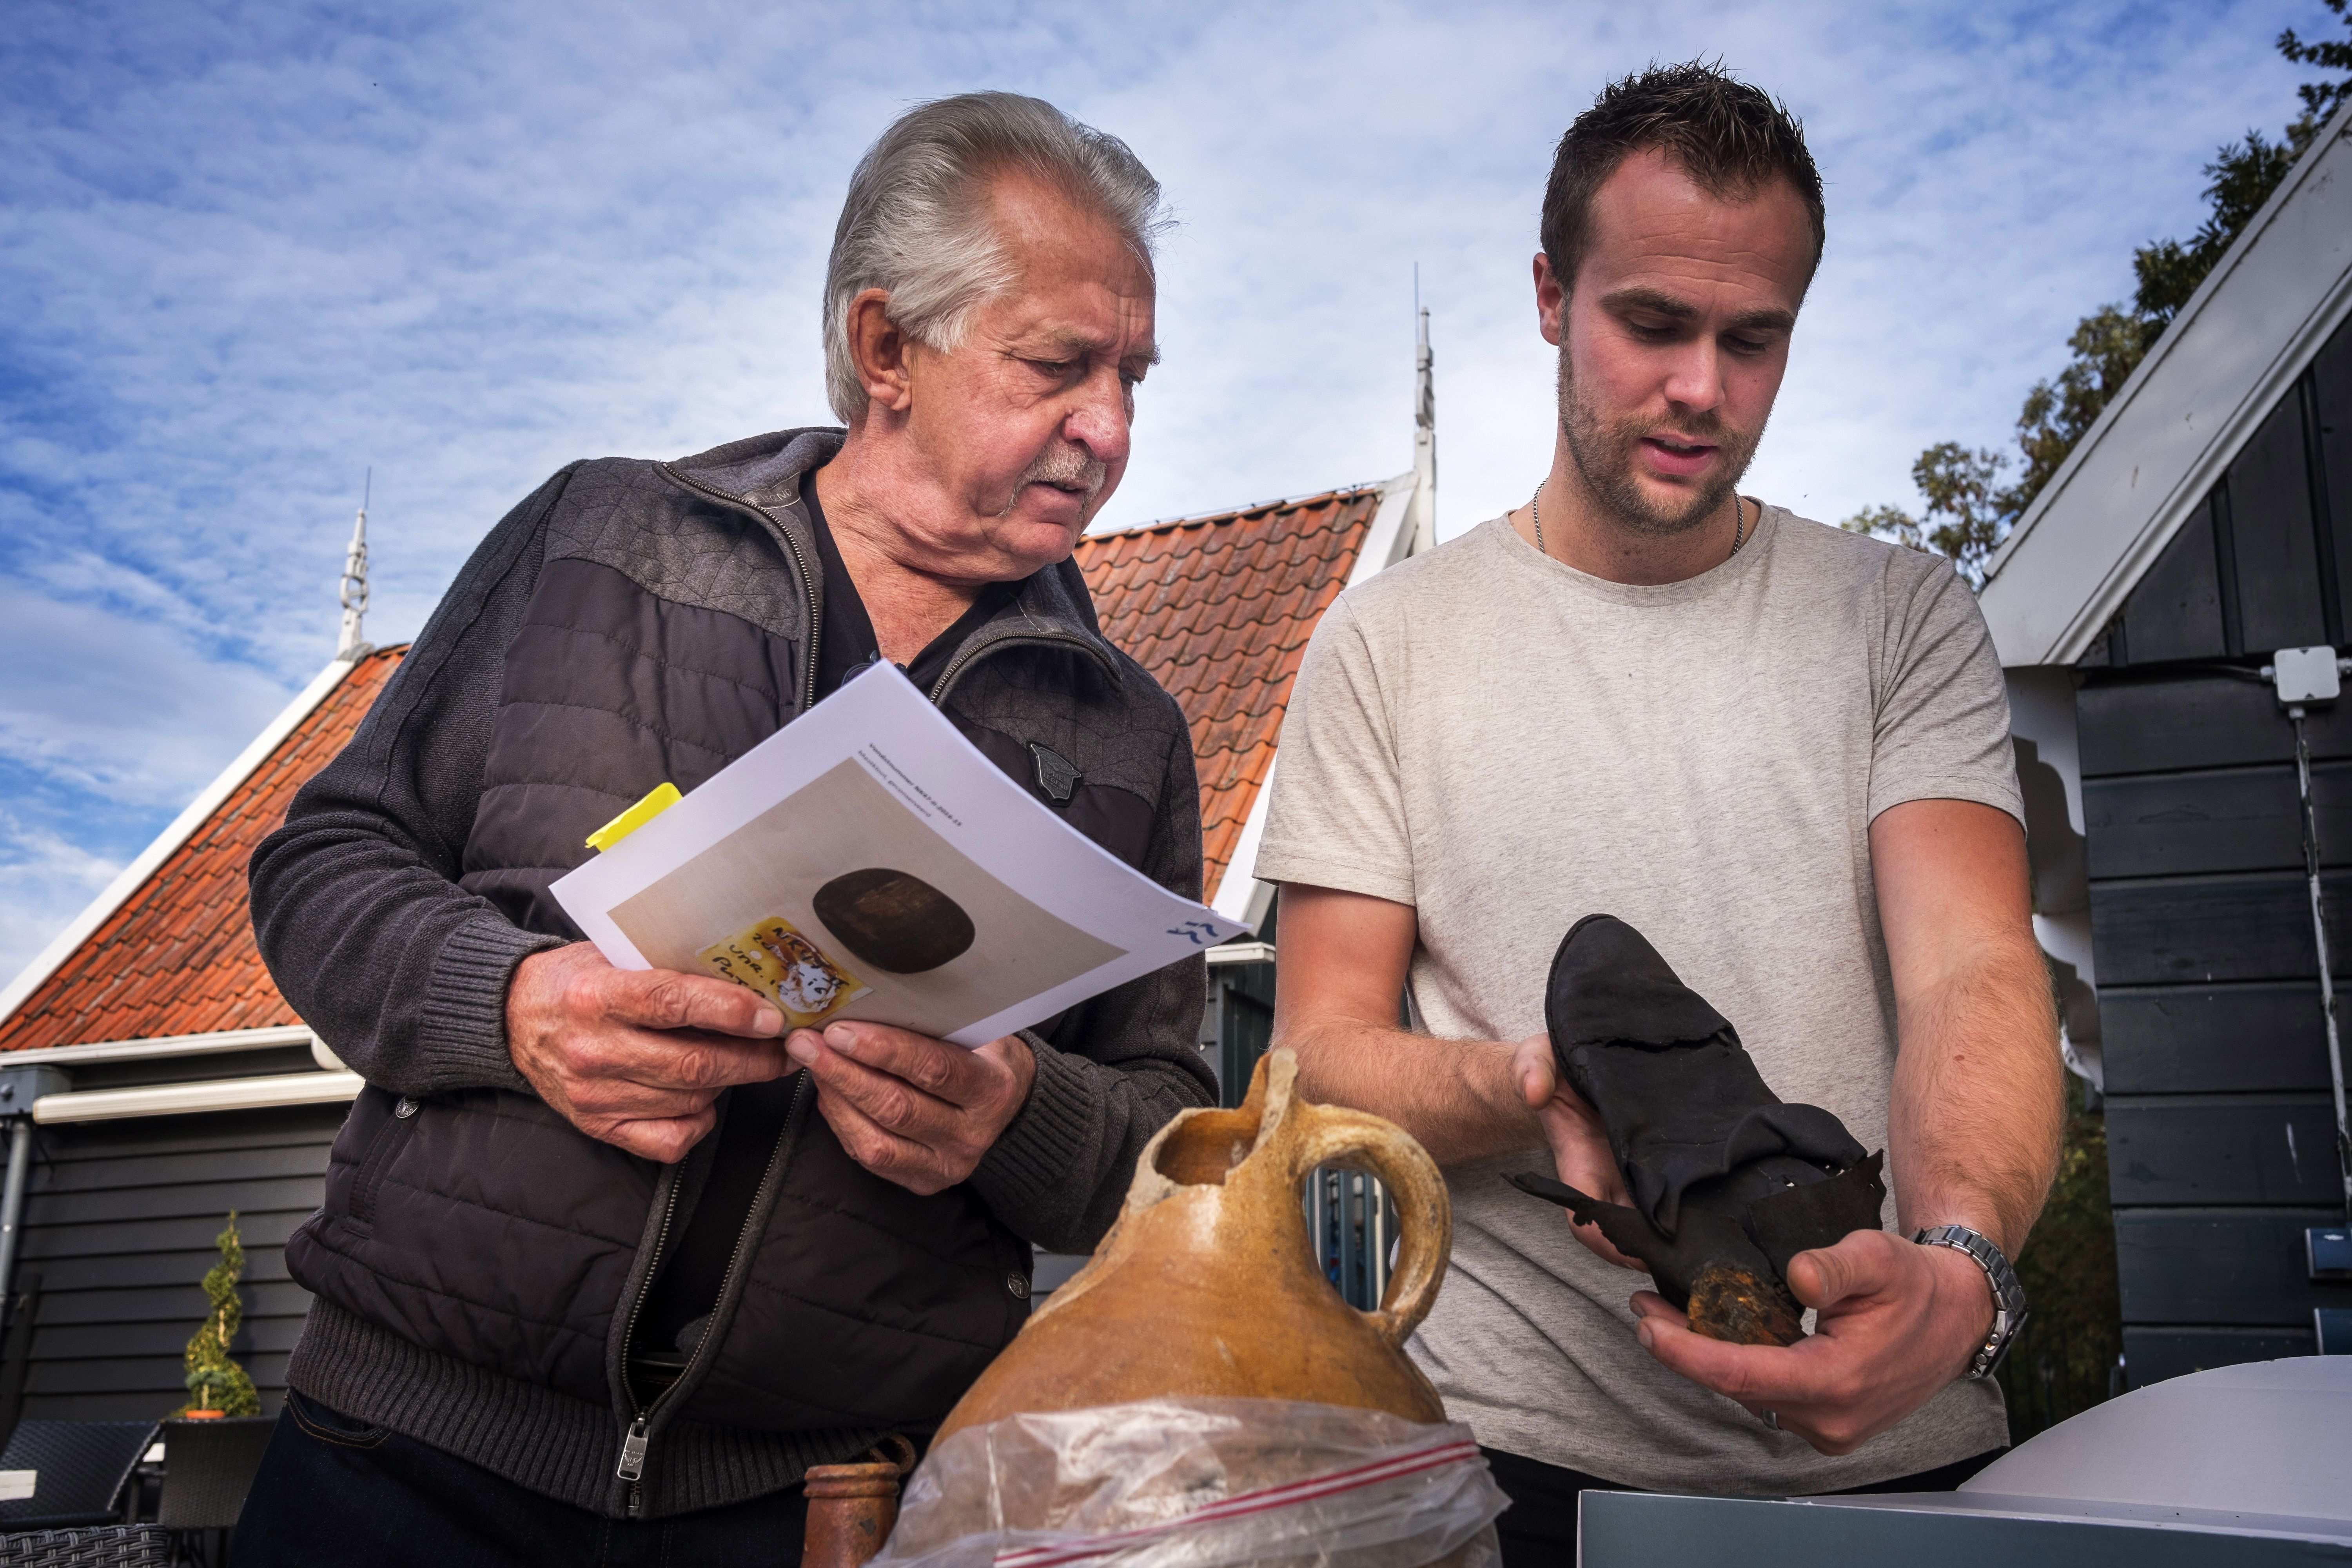 Los arqueólogos Dick Velthuizen (izquierda) e Yftinus van Popta observan objetos hallados en pecios descubiertos entre los campos / Foto: Josep Cano